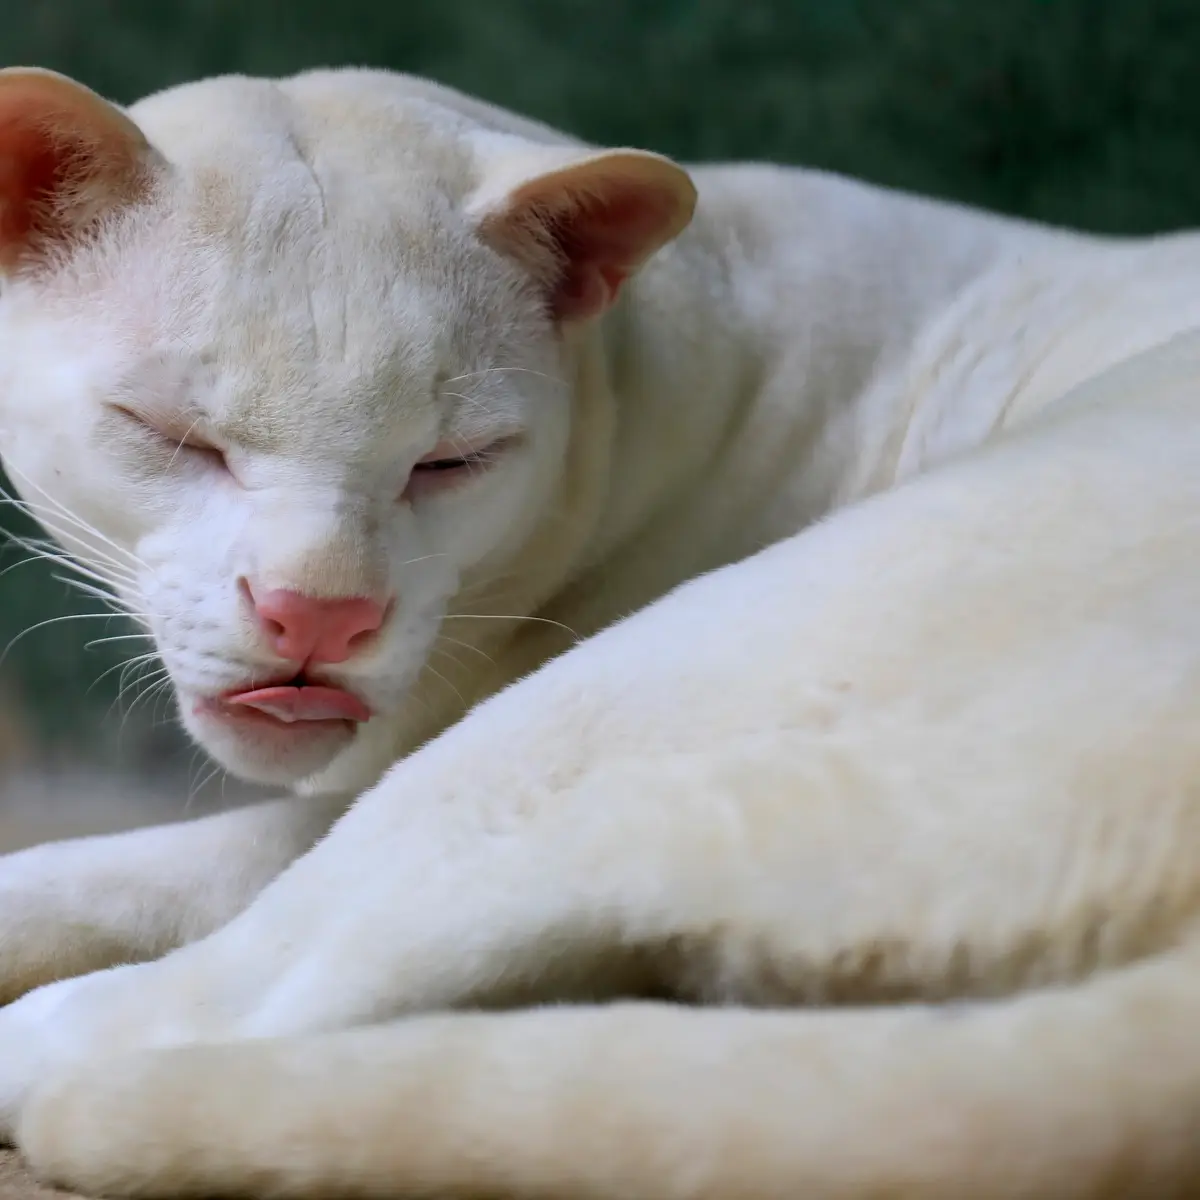 Os animais também podem ser albinos